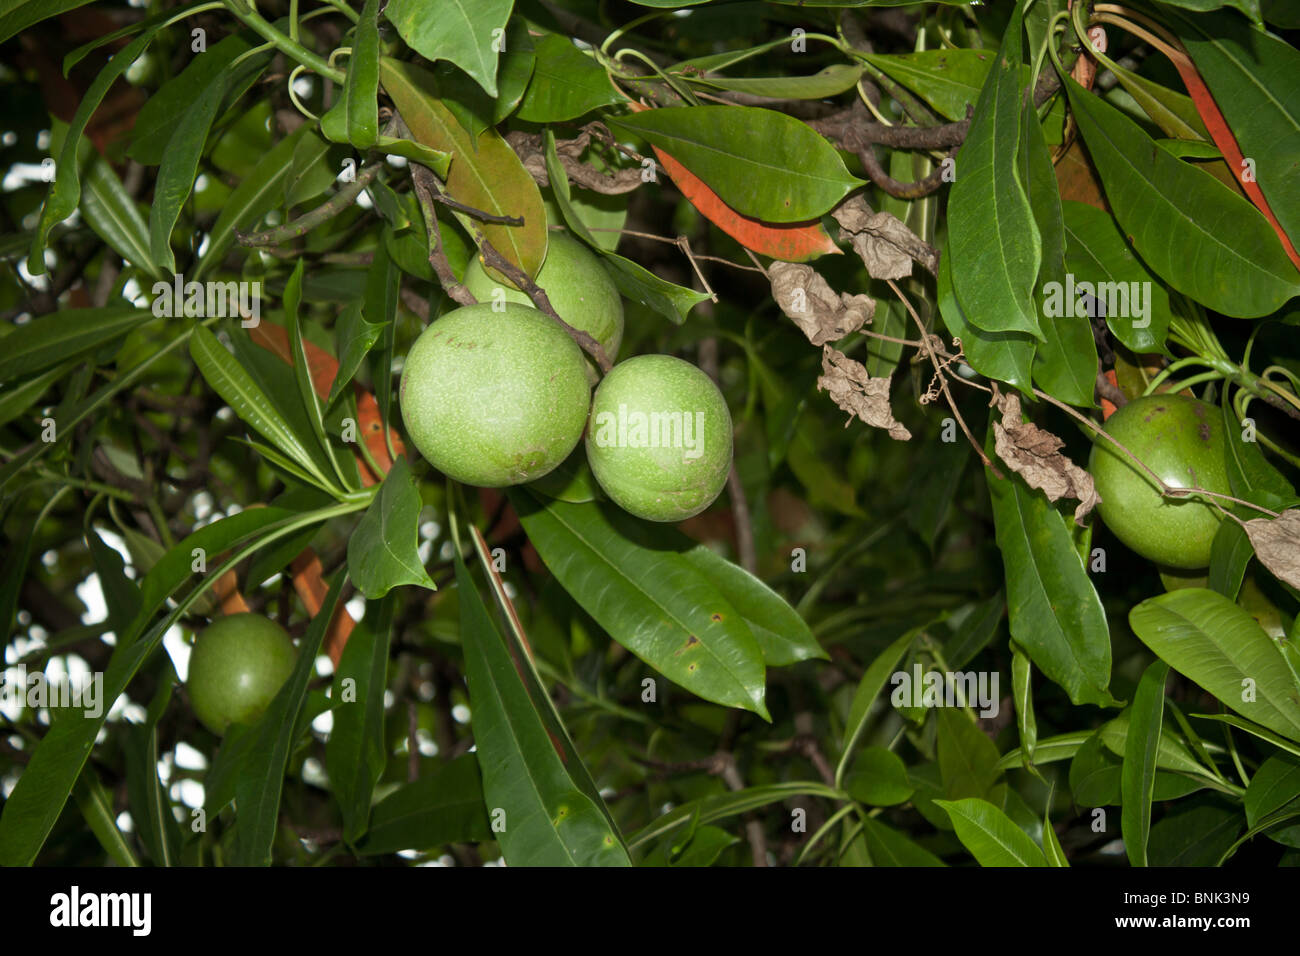 Marmelade de fruits sapotille Manilkara zapota prune twig mieux connu en Inde comme Chikoo ou Chiku verts Banque D'Images